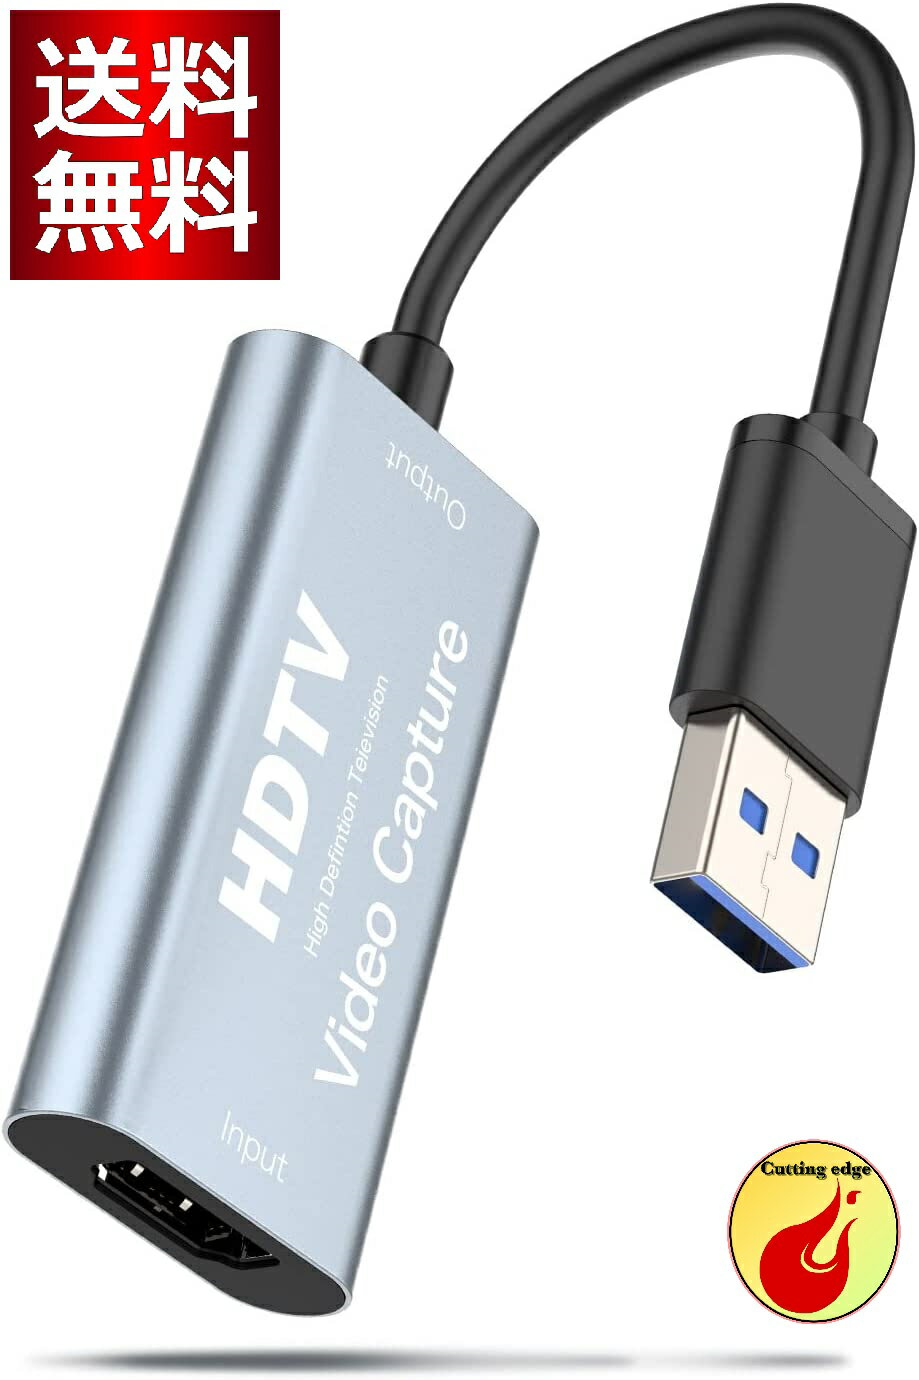 2023新登場 キャプチャーボード USB3.0 HDMI 変換アダプタ 高画質録画 HD1080P/4Kパススルー機能 HDMI キャプチャーボード ビデオキャプチャー ゲーム録画/HDMIビデオ録画/ライブ配信用キャプチャー ボード 電源不要 小型軽量 低遅延